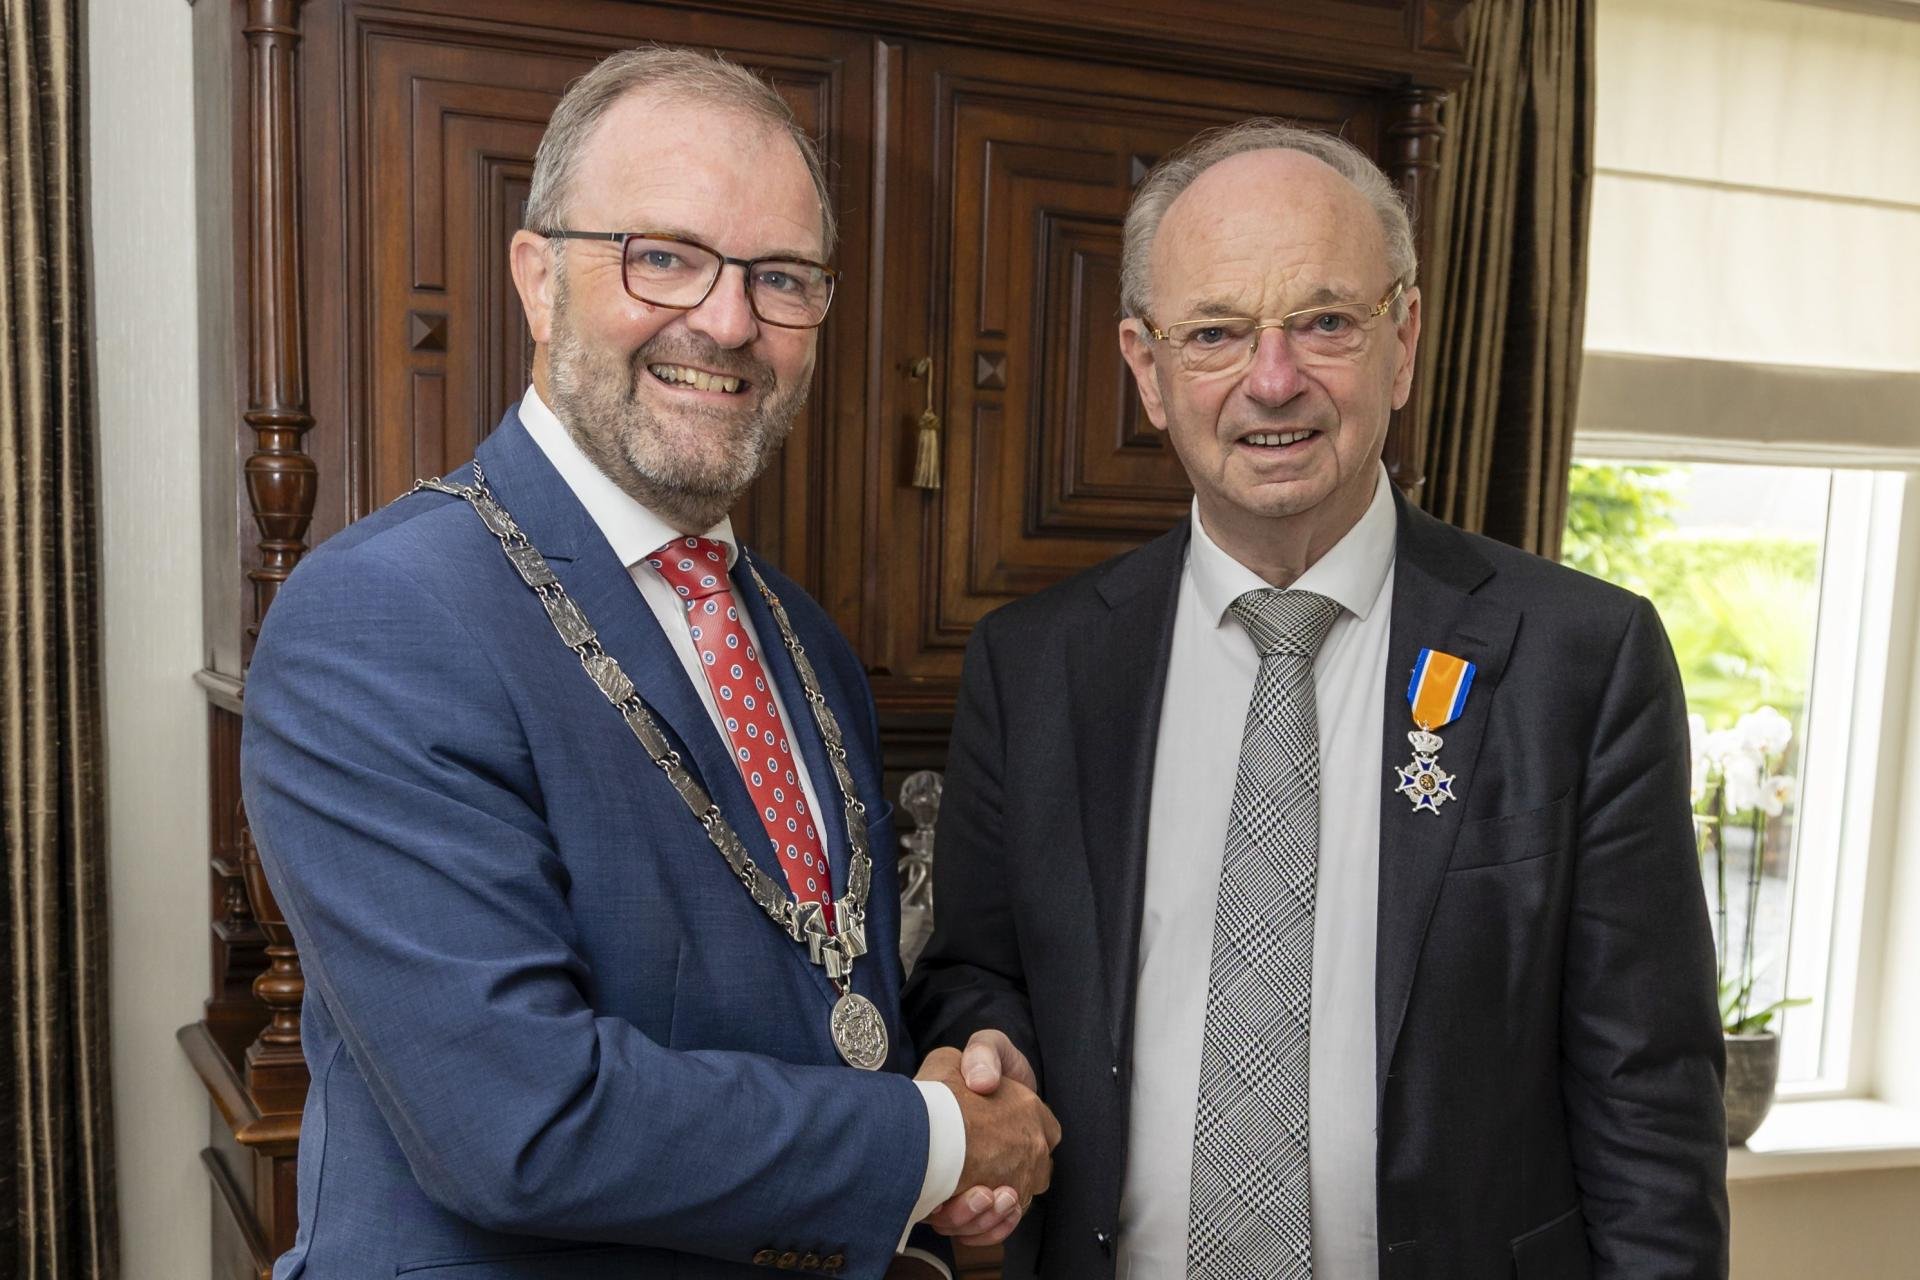 De heer Vermeulen ontvangt een Koninklijke Onderscheiding van burgemeester Servaas Stoop